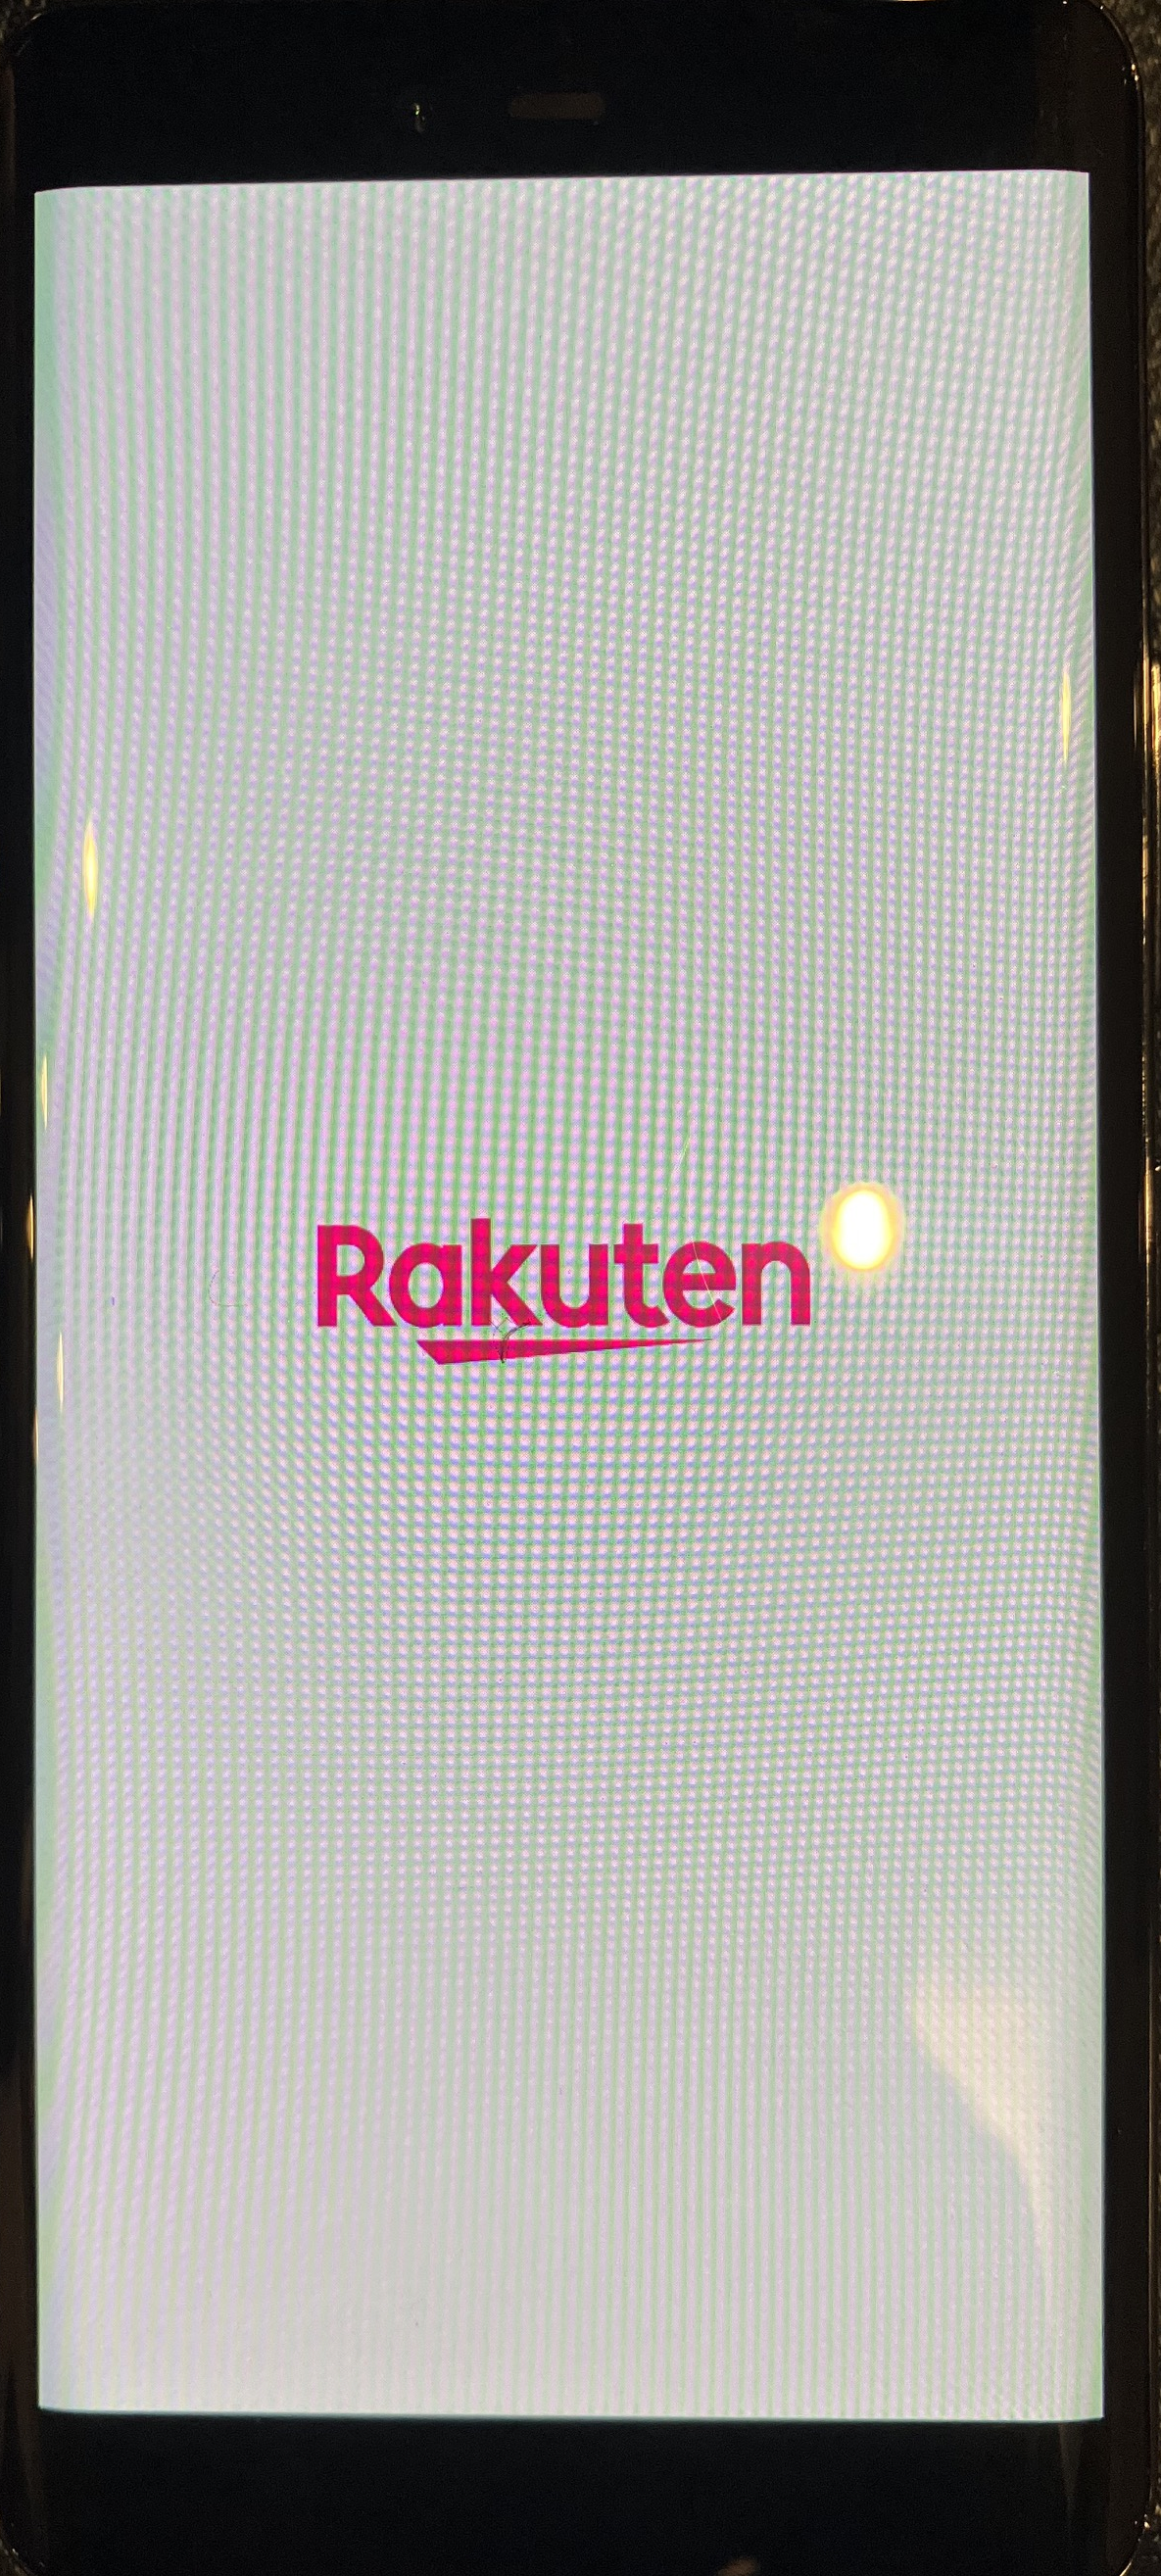 Rakuten Hand:Rakutenロゴから先に進まない問題